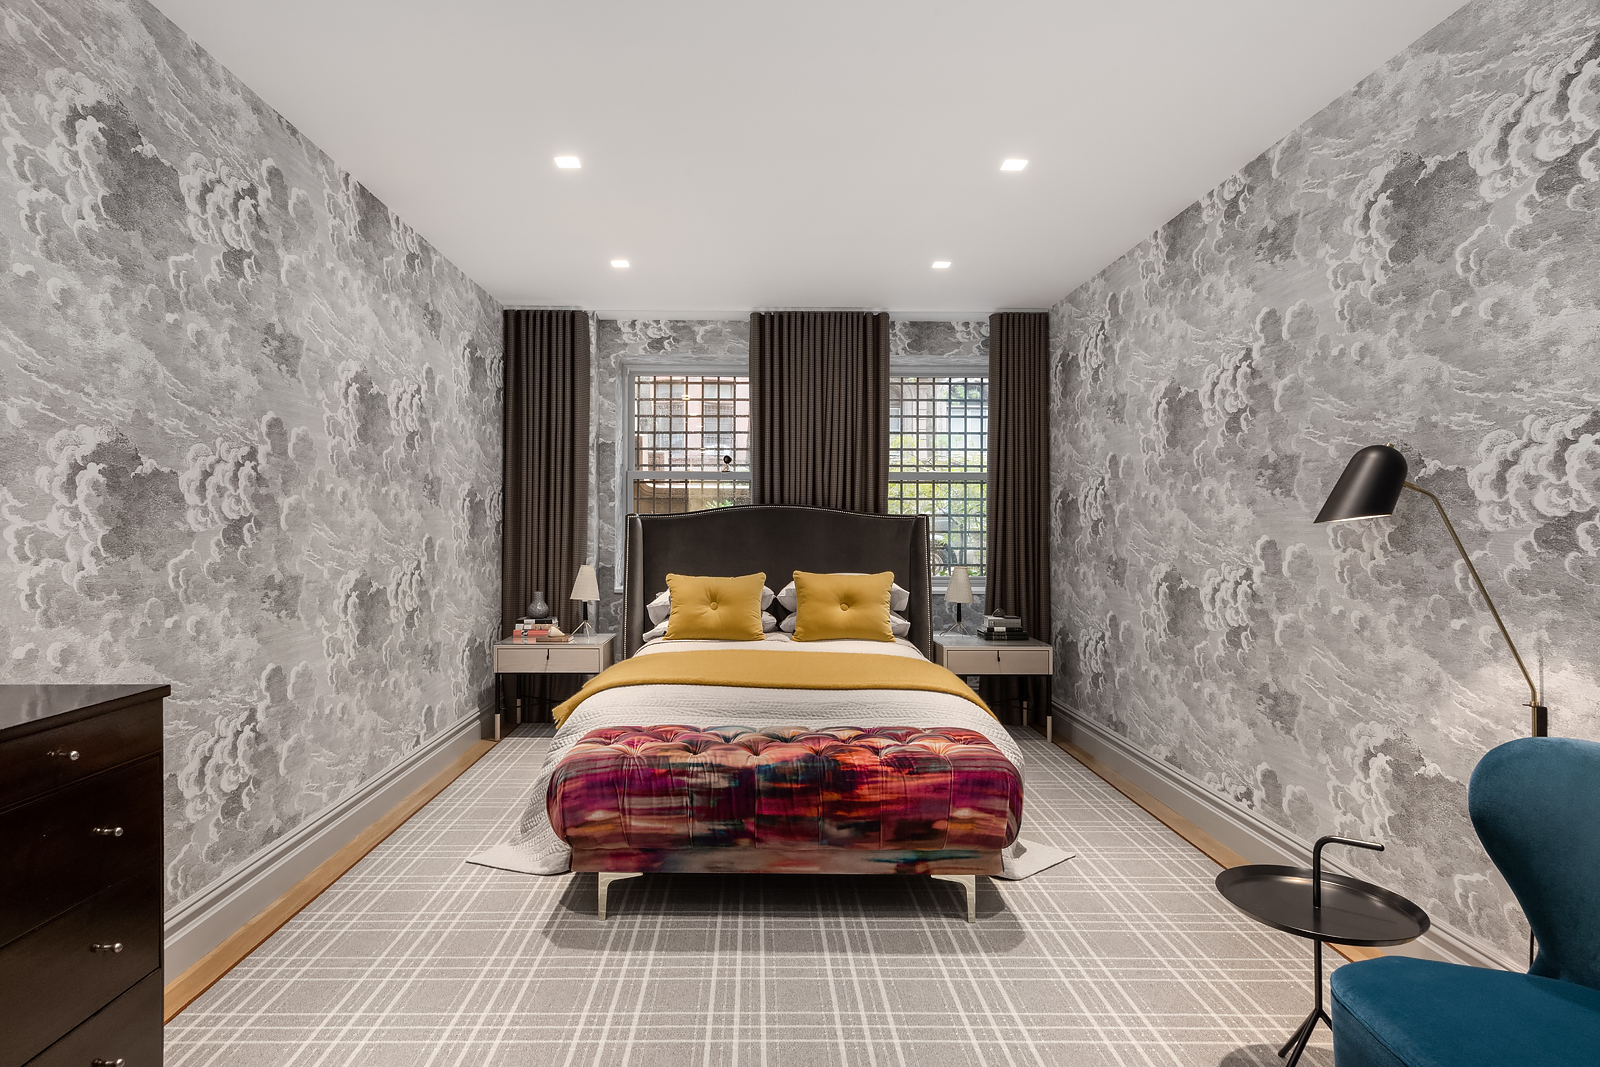 La casa ofrece dormitorios de estilos muy distintos, como este con patrones y contrastes cromáticos. Fotos: Evan Joseph Photography. - imagen 15